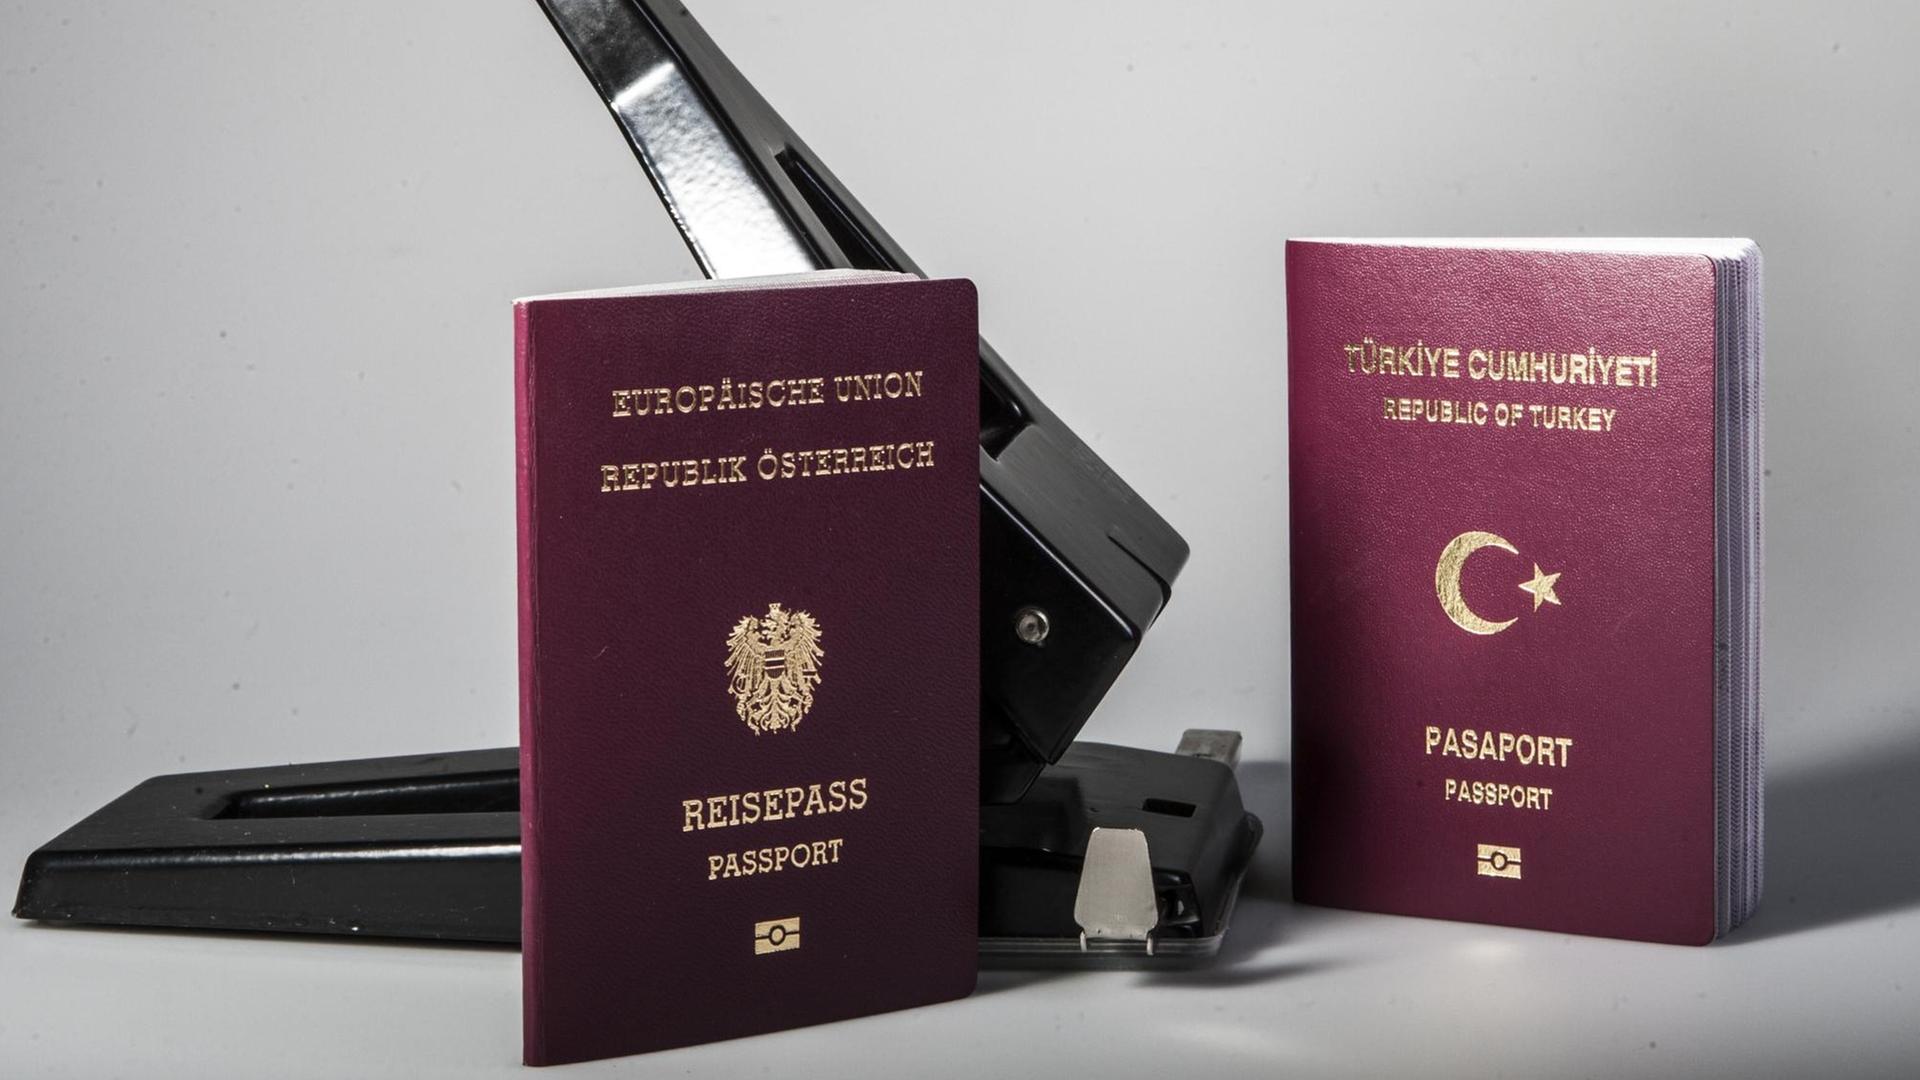 Kann man eine doppelte Staatsbürgerschaft haben?